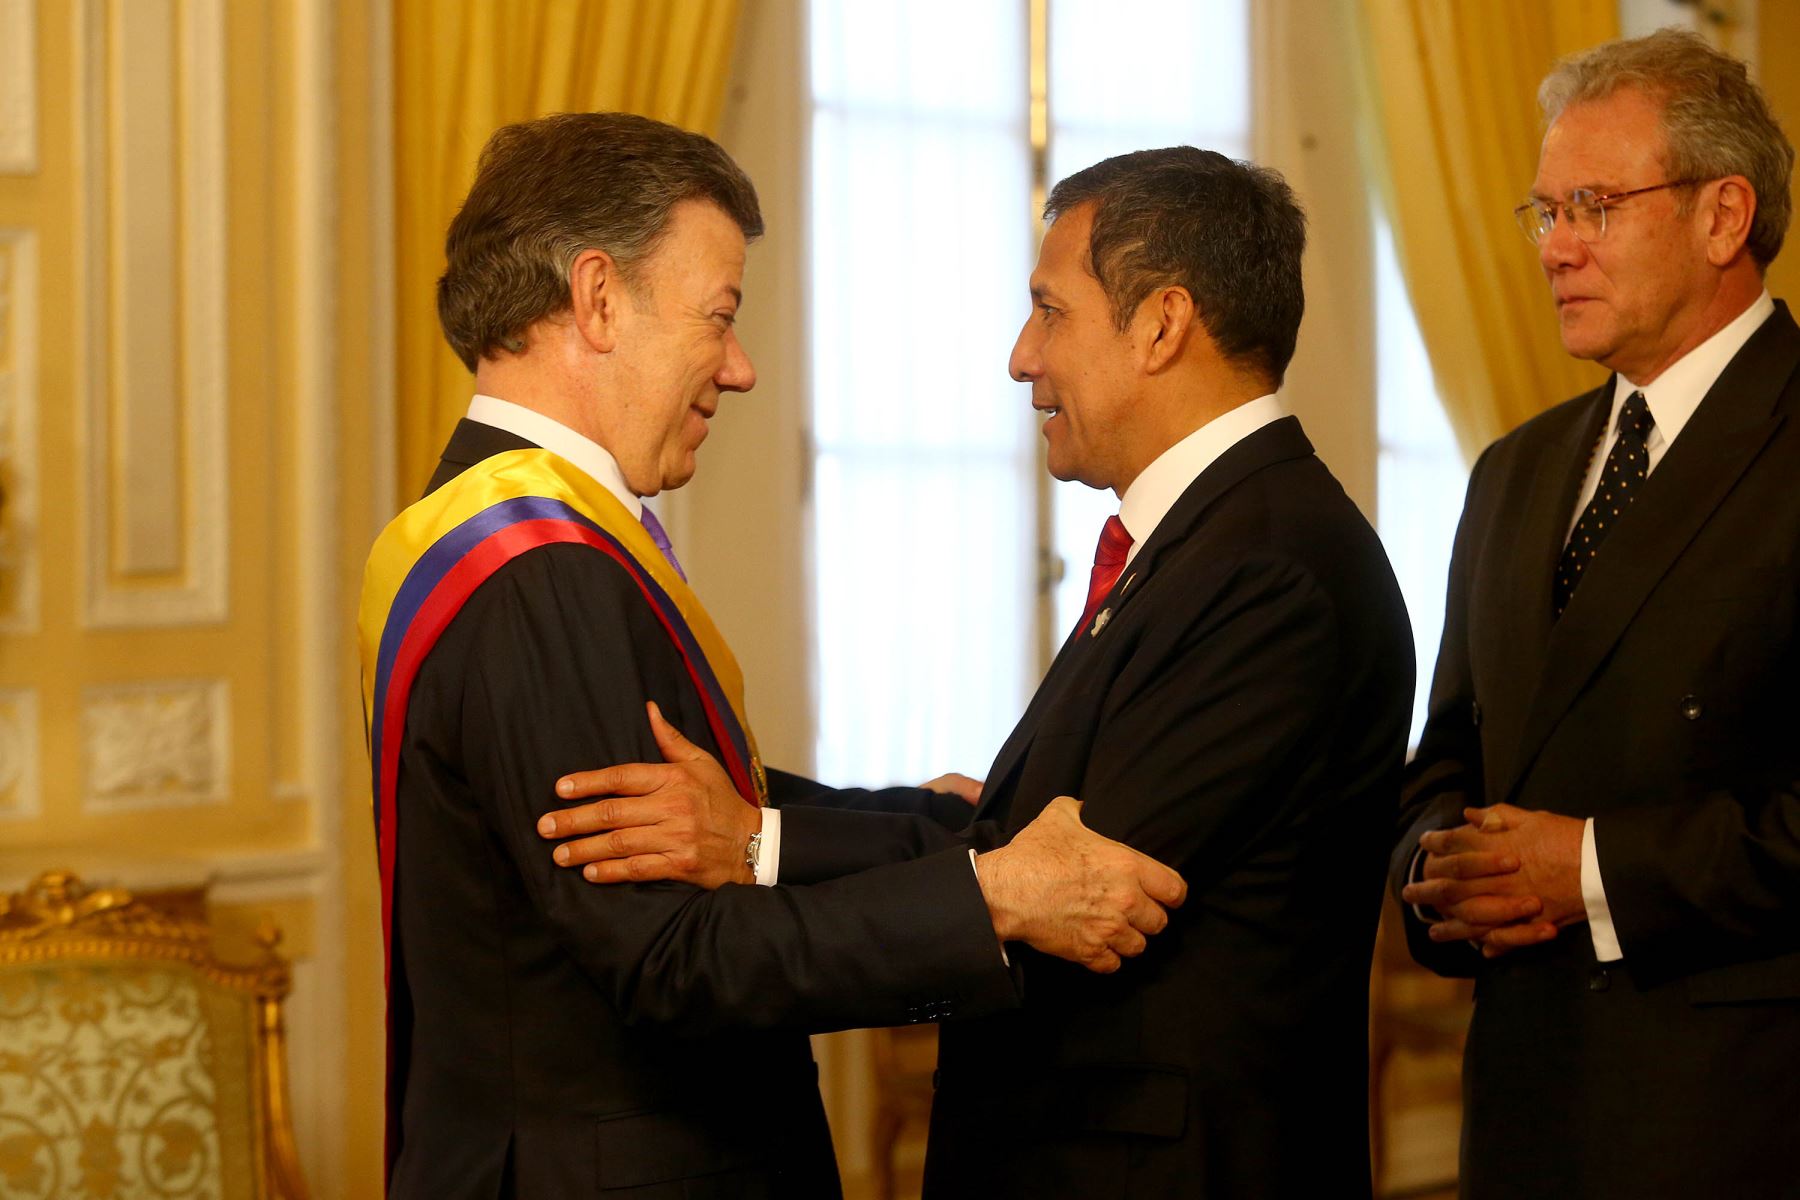 Saludo protocolar del presidente Ollanta Humala al mandatario colombiano Juan Manuel Santos en la Casa de Nariño.Foto: ANDINA/Prensa Presidencia